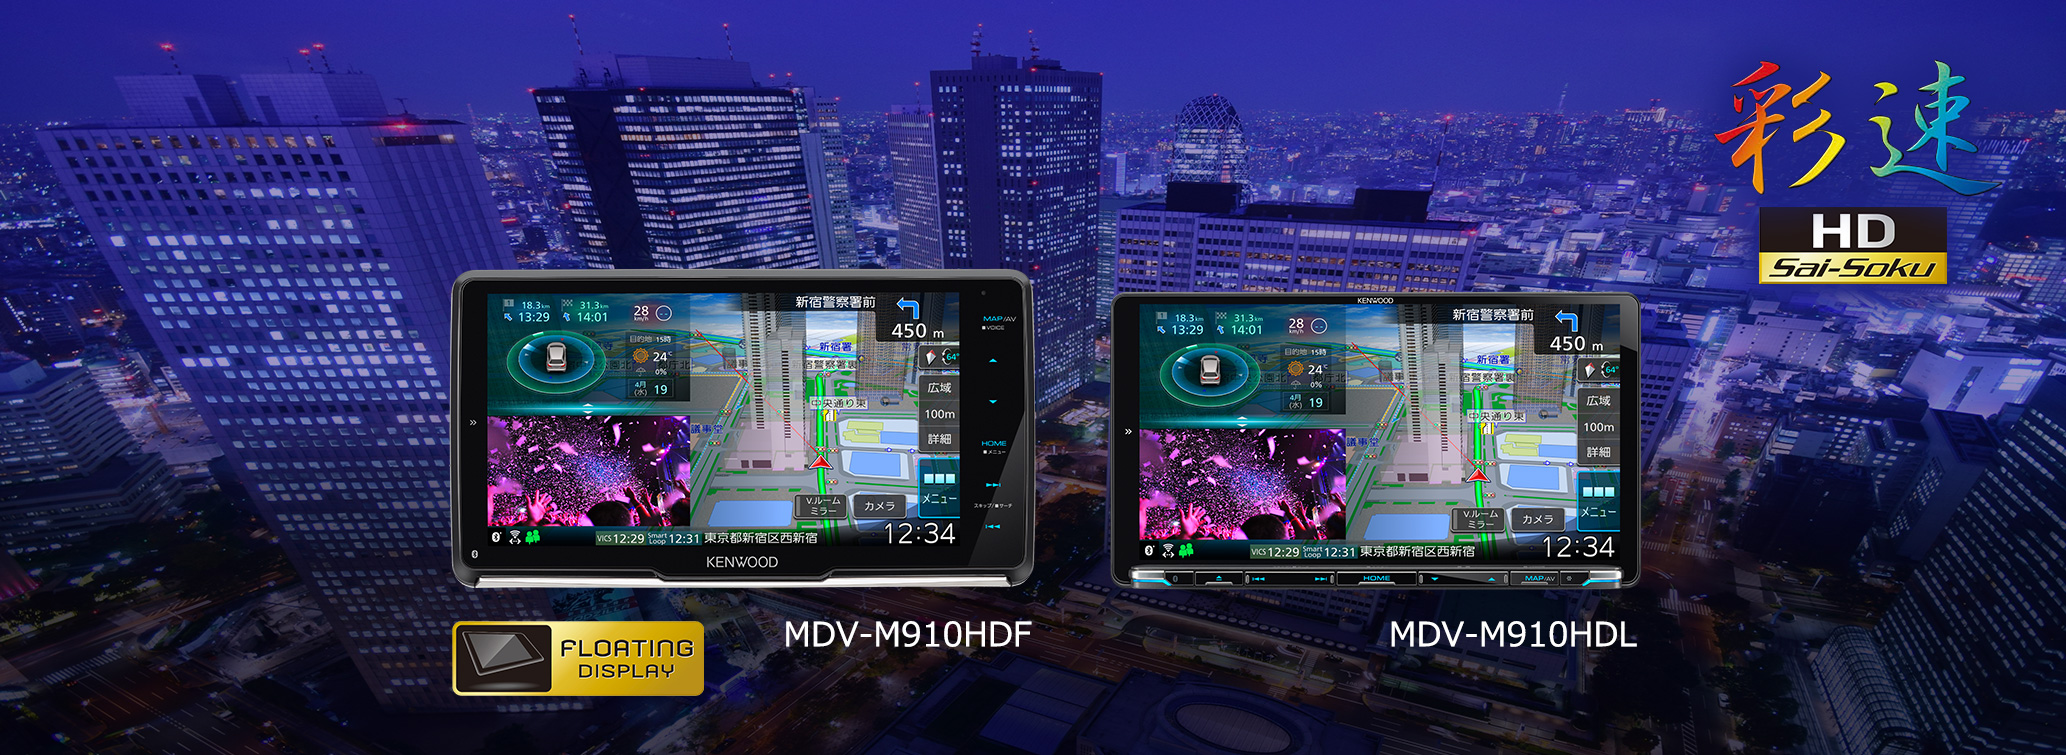 AVナビゲーションシステム“彩速ナビ”「MDV-M910HDF」「MDV-M910HDL」を